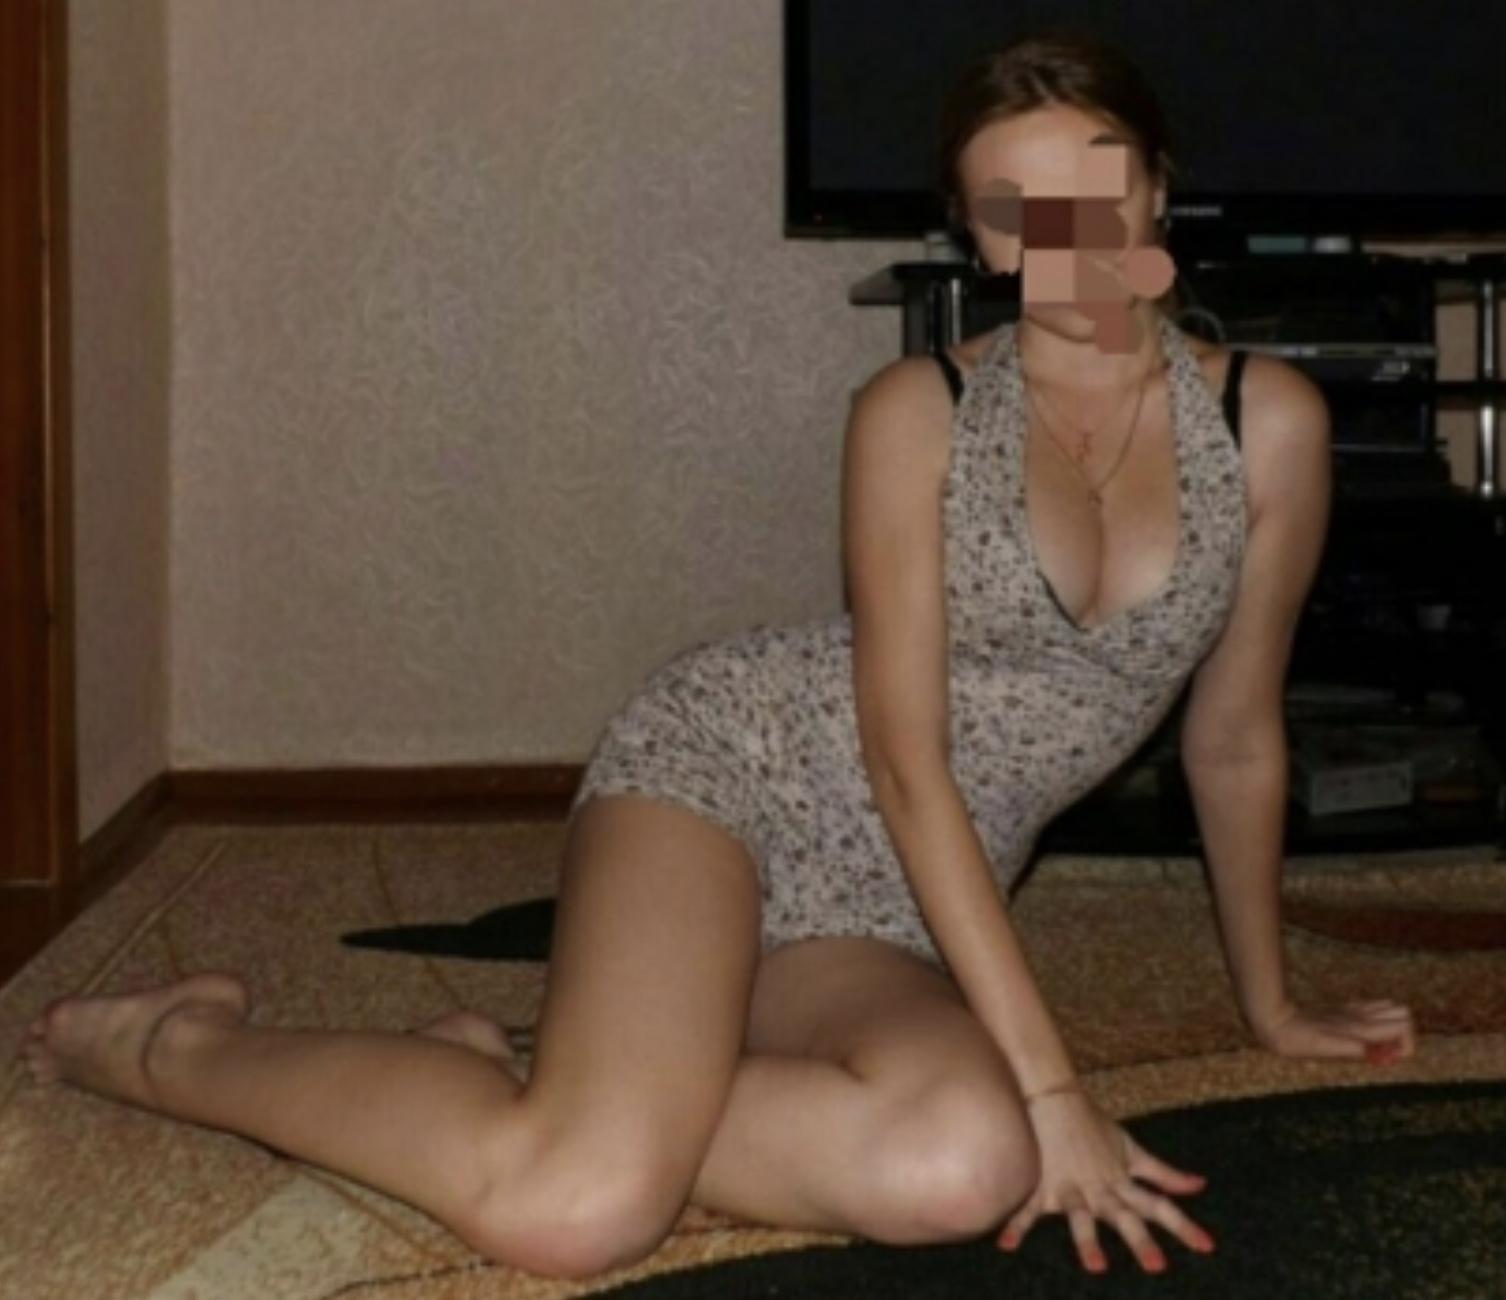 Проститутка Юлия, фото 1, тел: 0978449540. В центре города - Киев